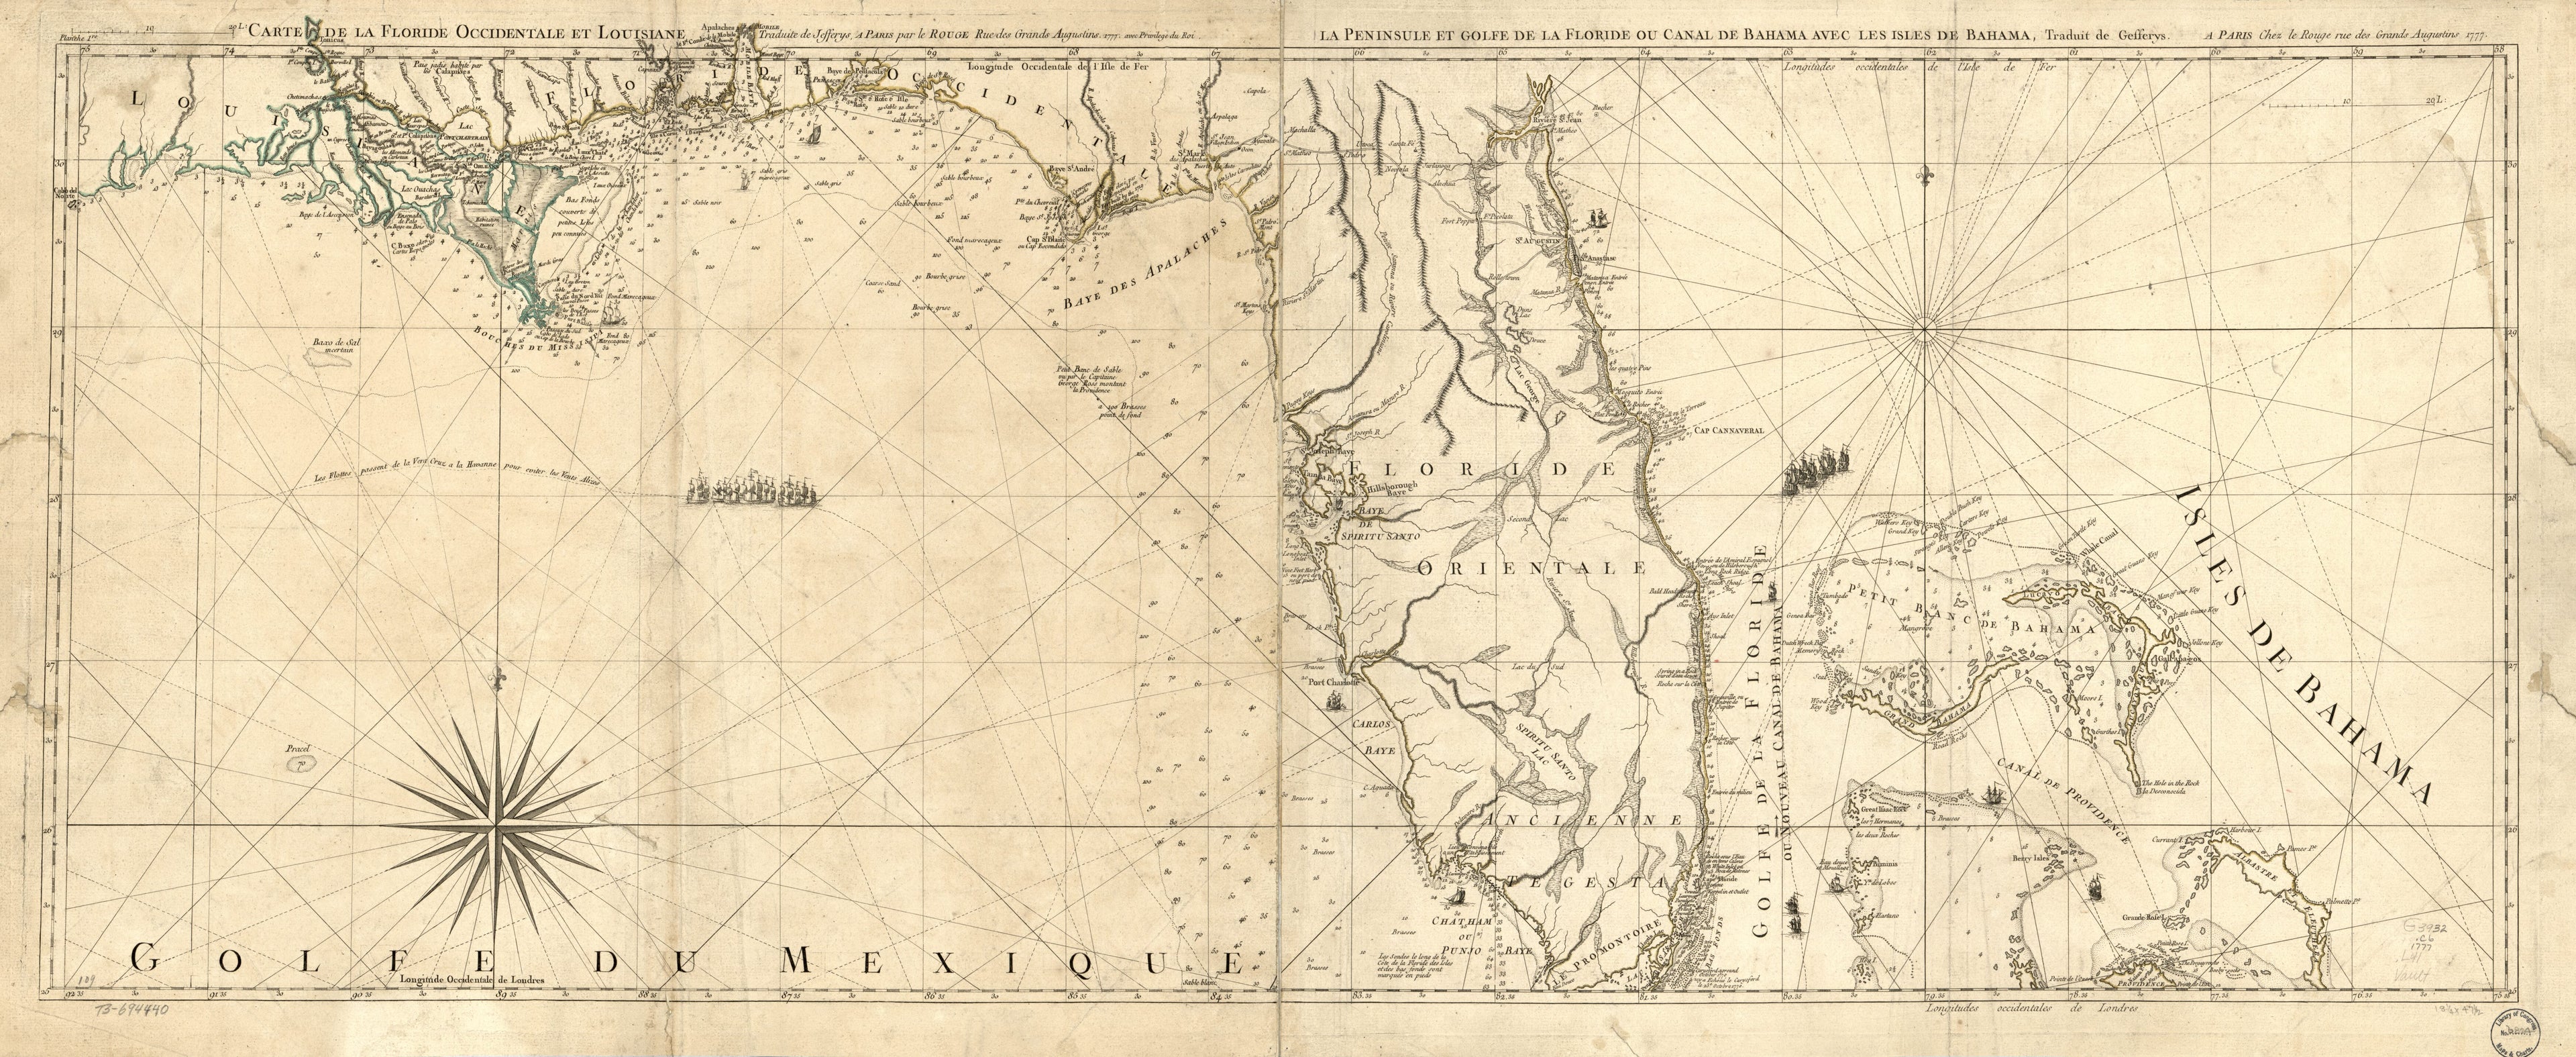 This old map of Carte De La Floride Occidentale Et Louisiane. La Peninsule Et Golfe De La Floride Ou Canal De Bahama Avec Les Isles De Bahama from 1778 was created by Thomas Jefferys,  Louis in 1778